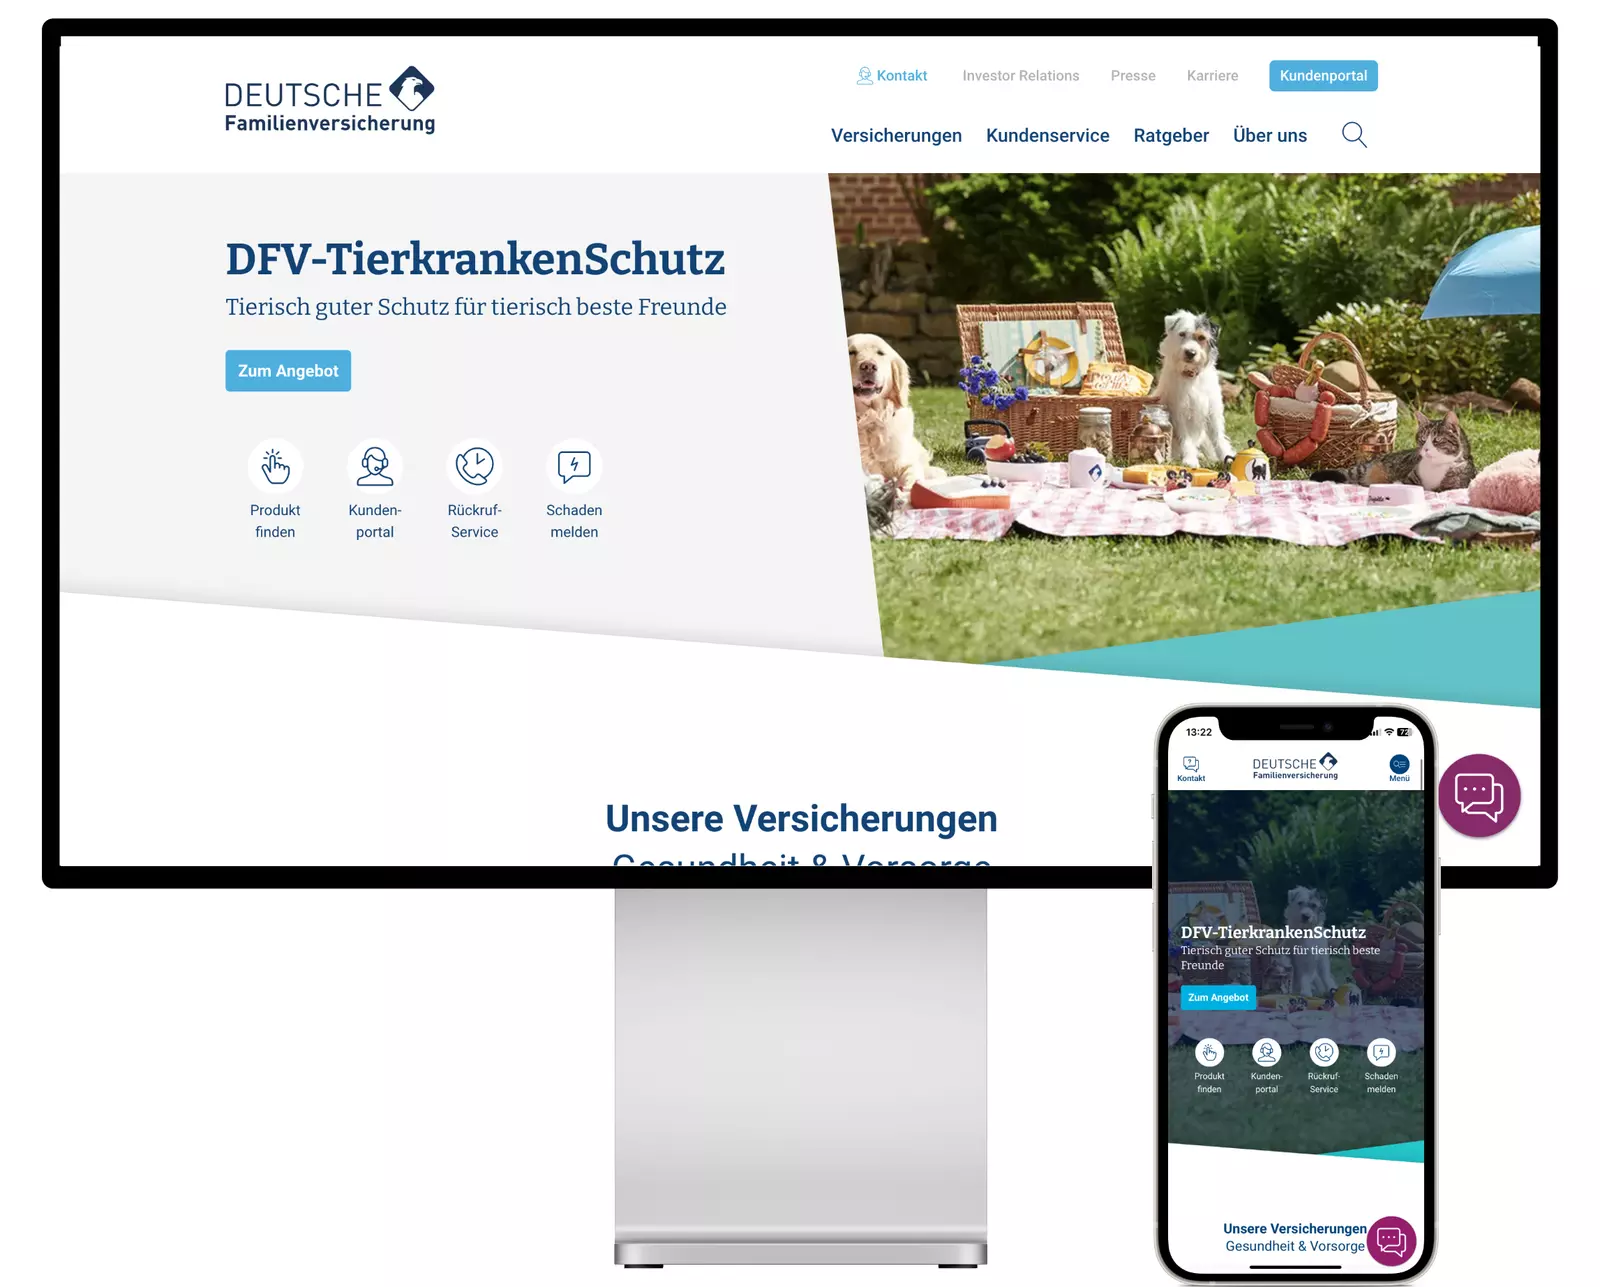 Die Website der Deutschen Familienversicherung basiert auf TYPO3